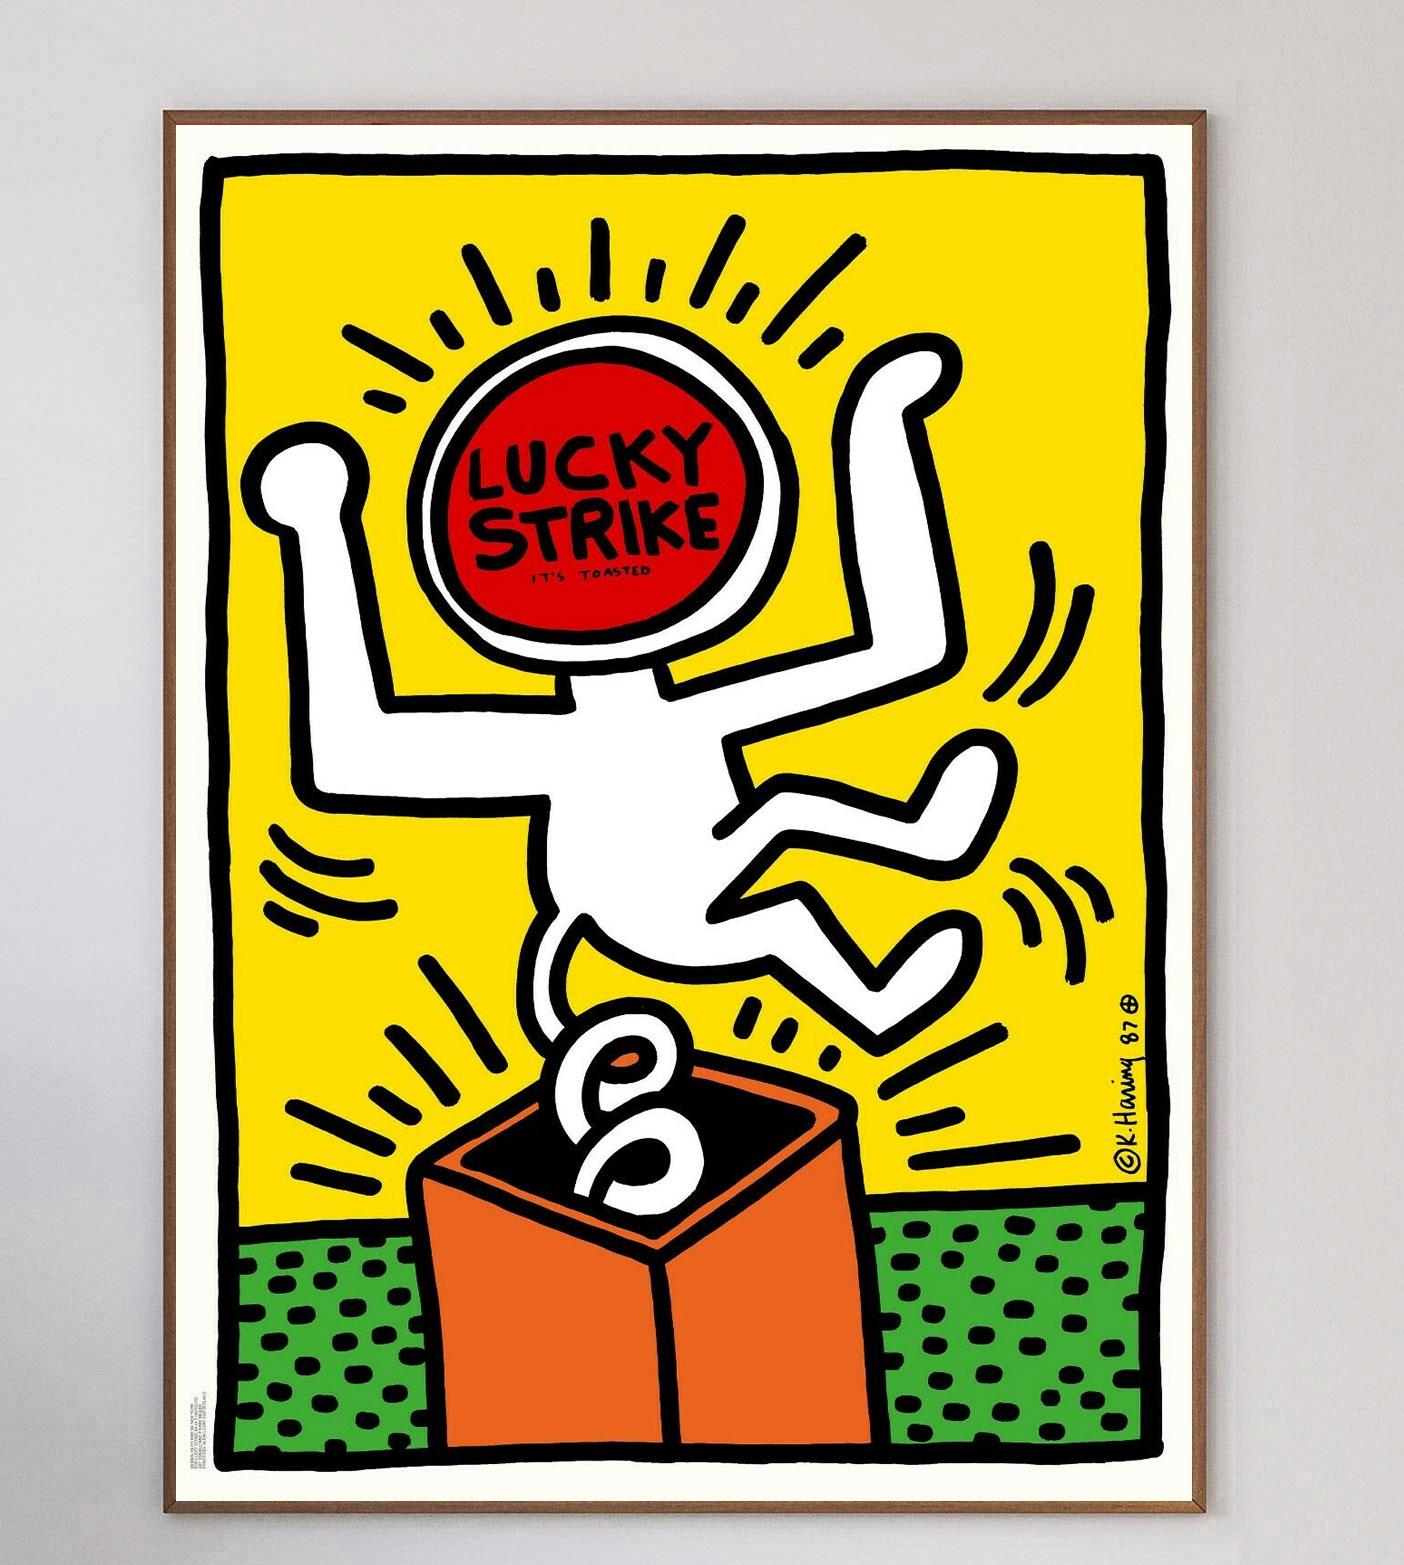 En 1987, la marque de cigarettes Lucky Strike a demandé à Keith Haring de concevoir une série d'affiches et de publicités. À son tour, Haring a soumis 10 pièces dans son style unique et caractéristique, dont 9 ont été acceptées. La dixième œuvre,